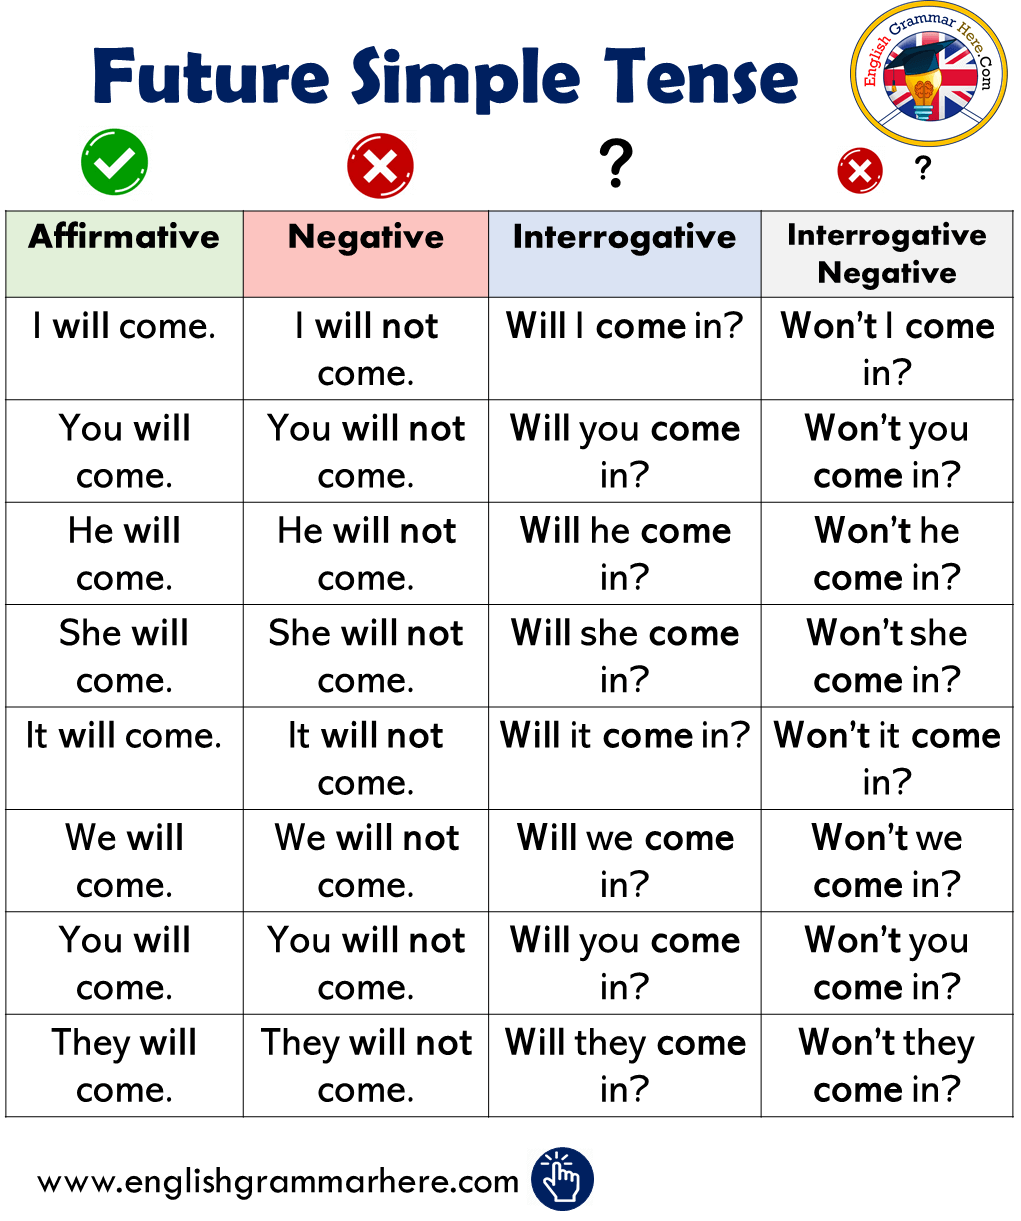 Future Simple Tense in English